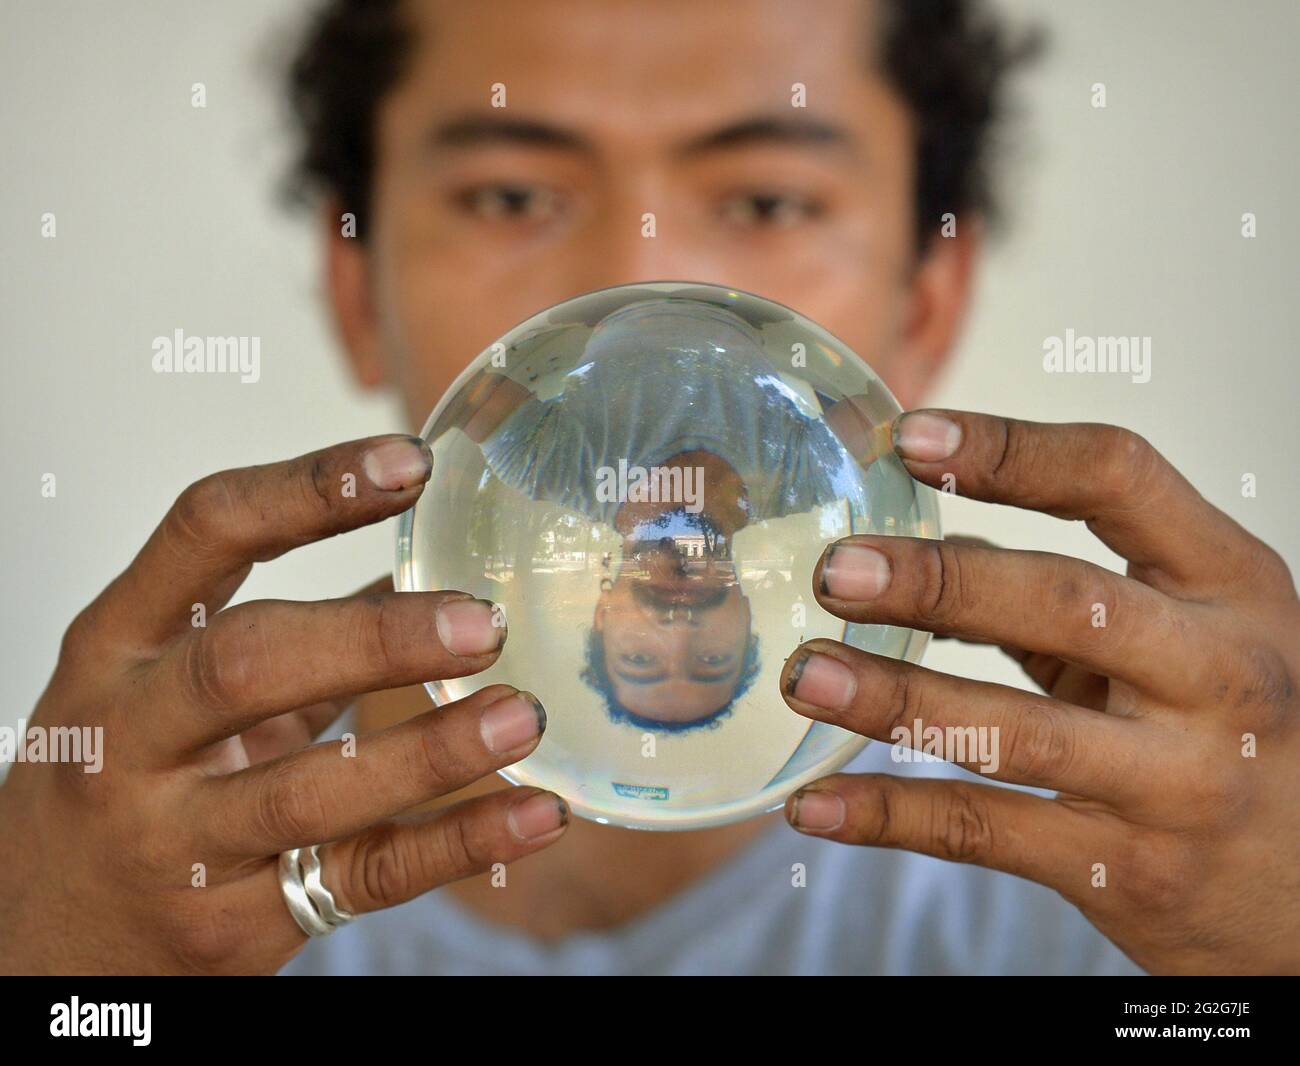 Le jeune Latino-homme avec des ongles sales tient une boule de cristal et fixe avec des yeux hypnotisants à son image miroir retournée verticalement sur l'orbe magique. Banque D'Images